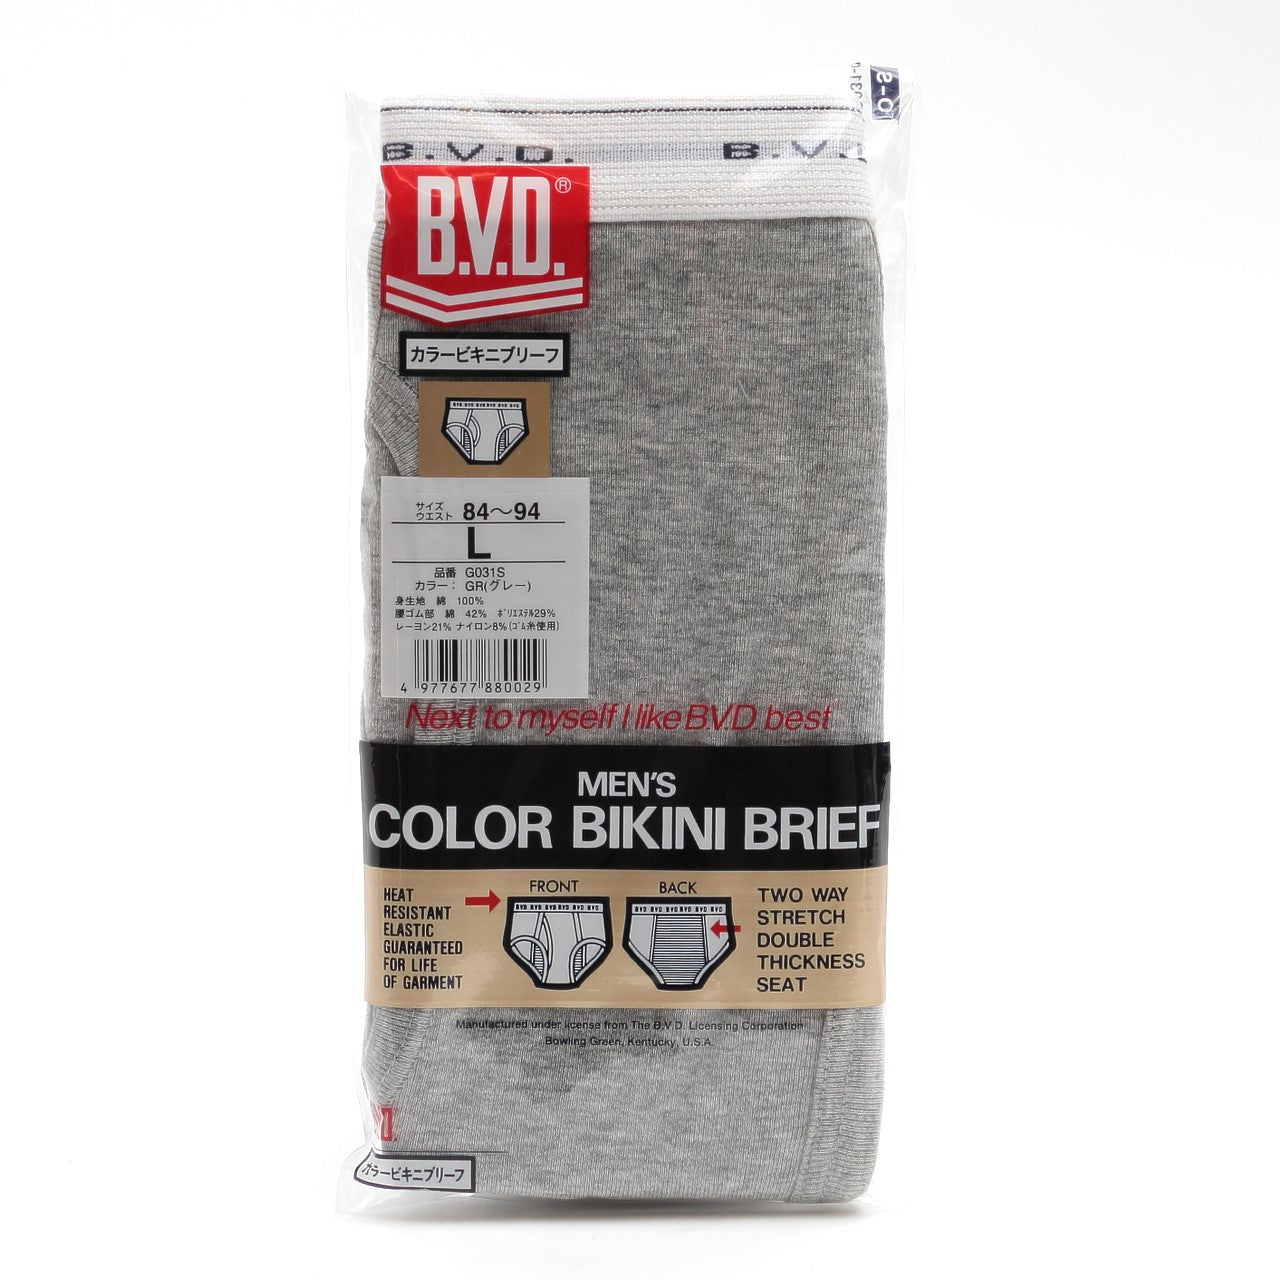 BVD ブリーフ ビキニ メンズ 下着 綿100% カラー 前開き M～LL bvd パンツ 肌着 インナー 男性 アンダーウェア コットン ブルー グレー レッド ネイビー ブラック